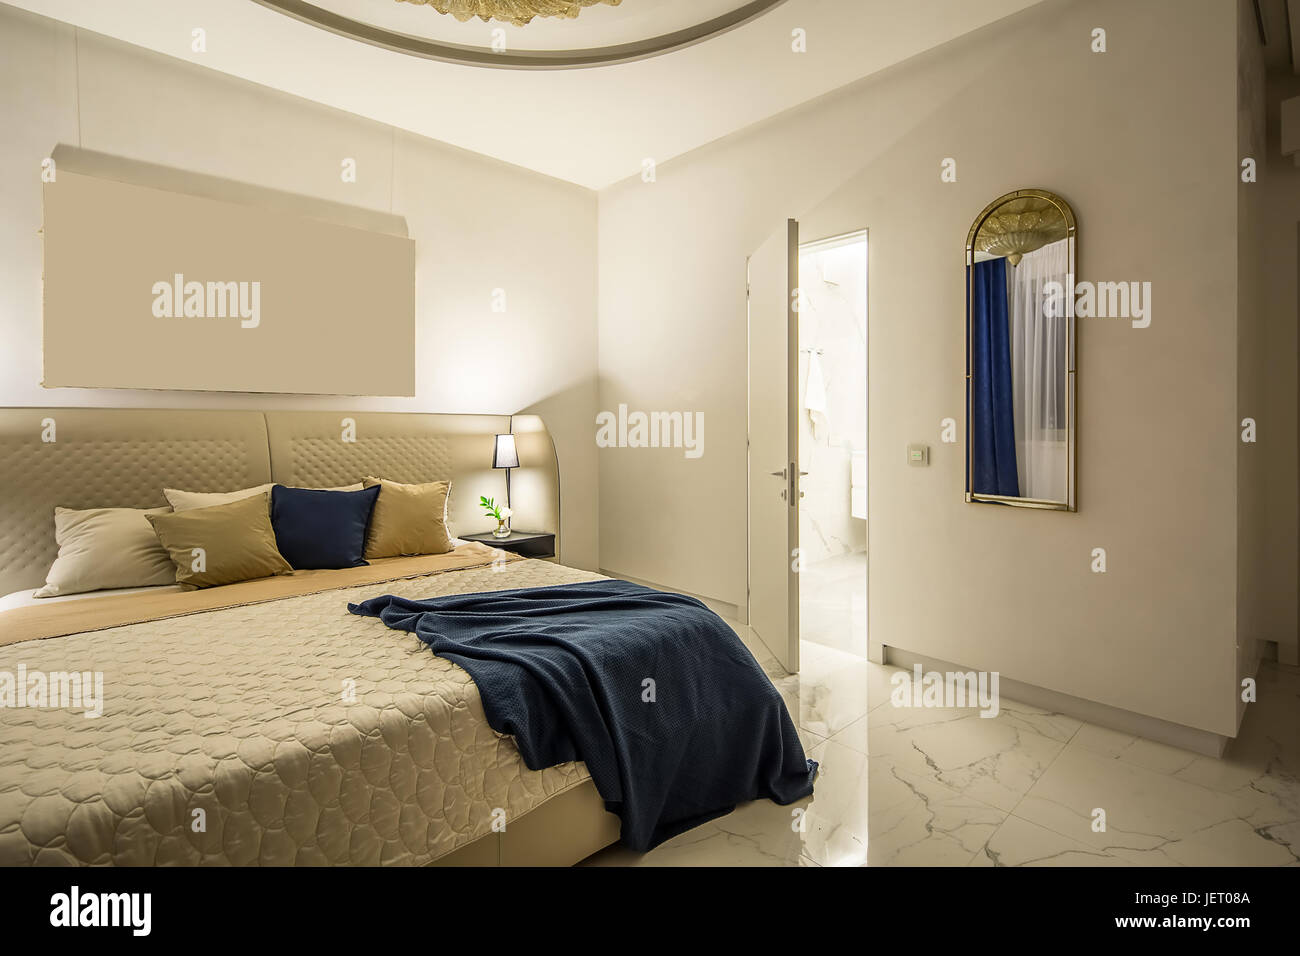 Moderne Schlafzimmer mit weißen Wänden und Licht gefliesten Boden. Gibt es eine Beige Bett mit bunten Kissen und ein blau kariert, Regal mit Blumen in einer Vase, l Stockfoto